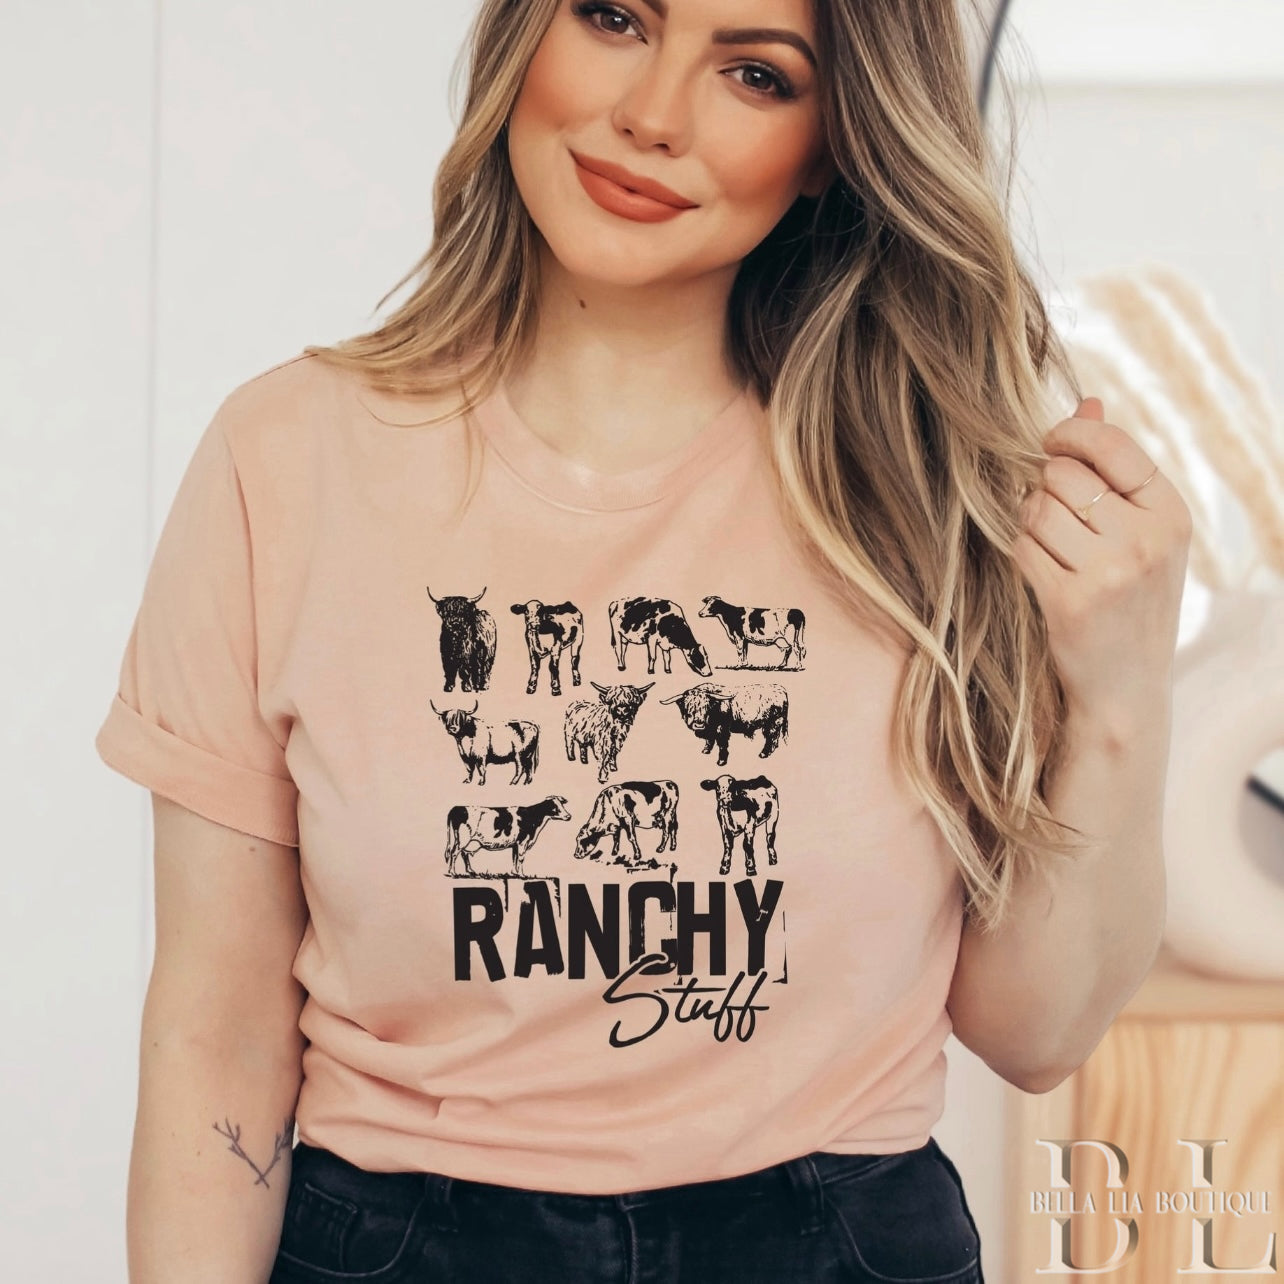 Ranchy Graphic Tee or Sweatshirt - Bella Lia Boutique